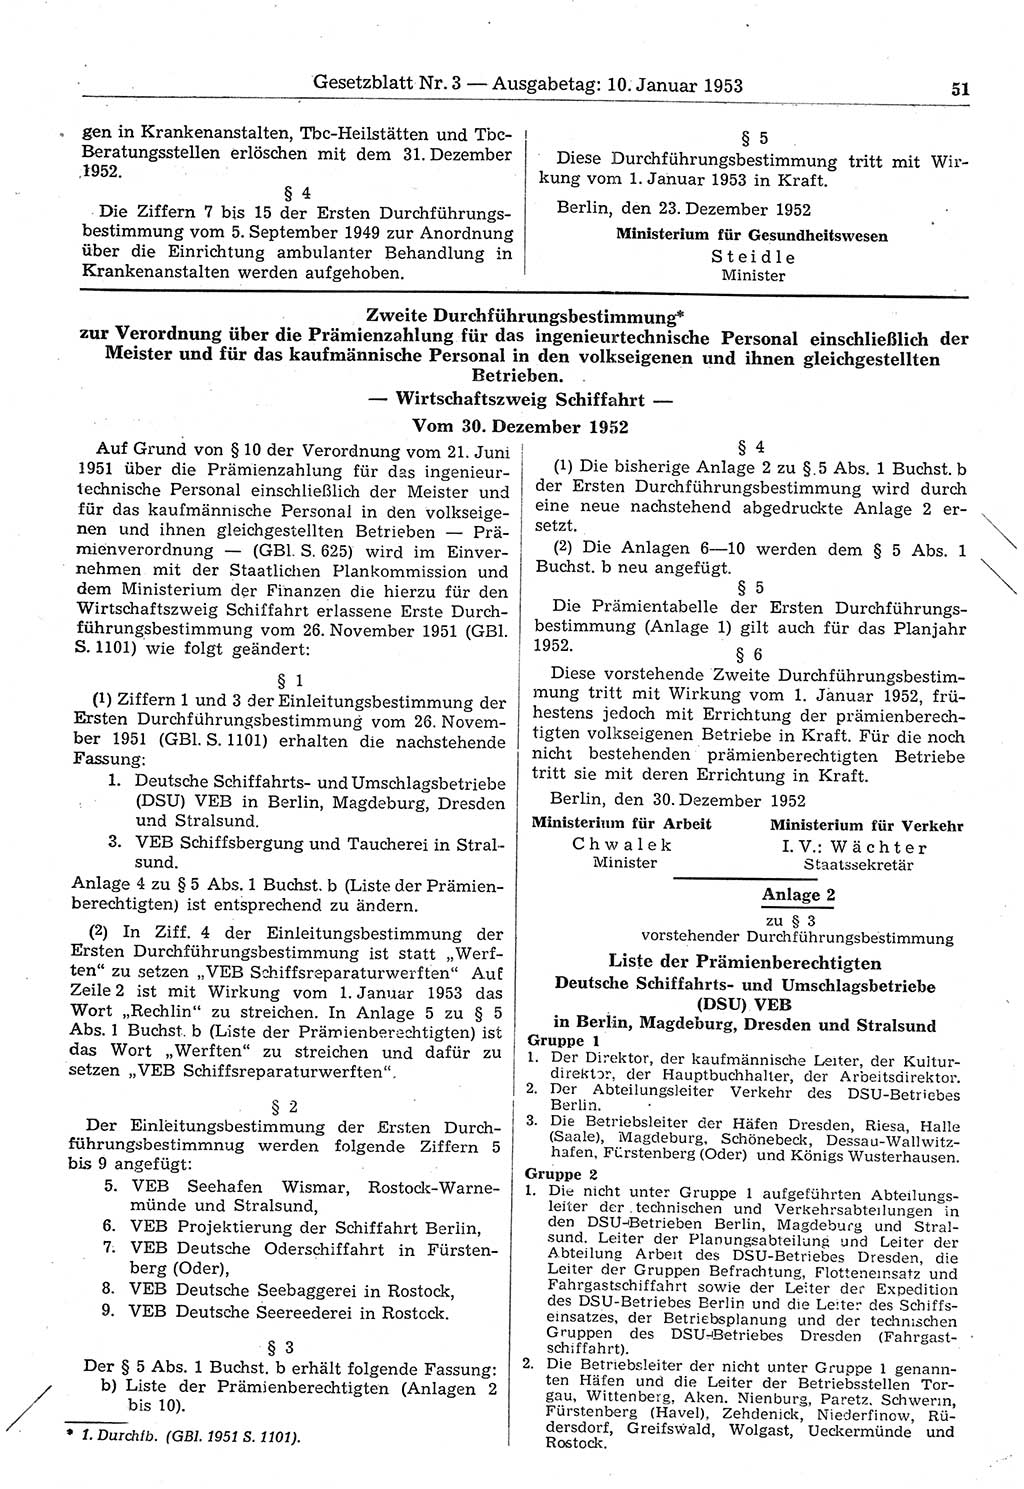 Gesetzblatt (GBl.) der Deutschen Demokratischen Republik (DDR) 1953, Seite 51 (GBl. DDR 1953, S. 51)